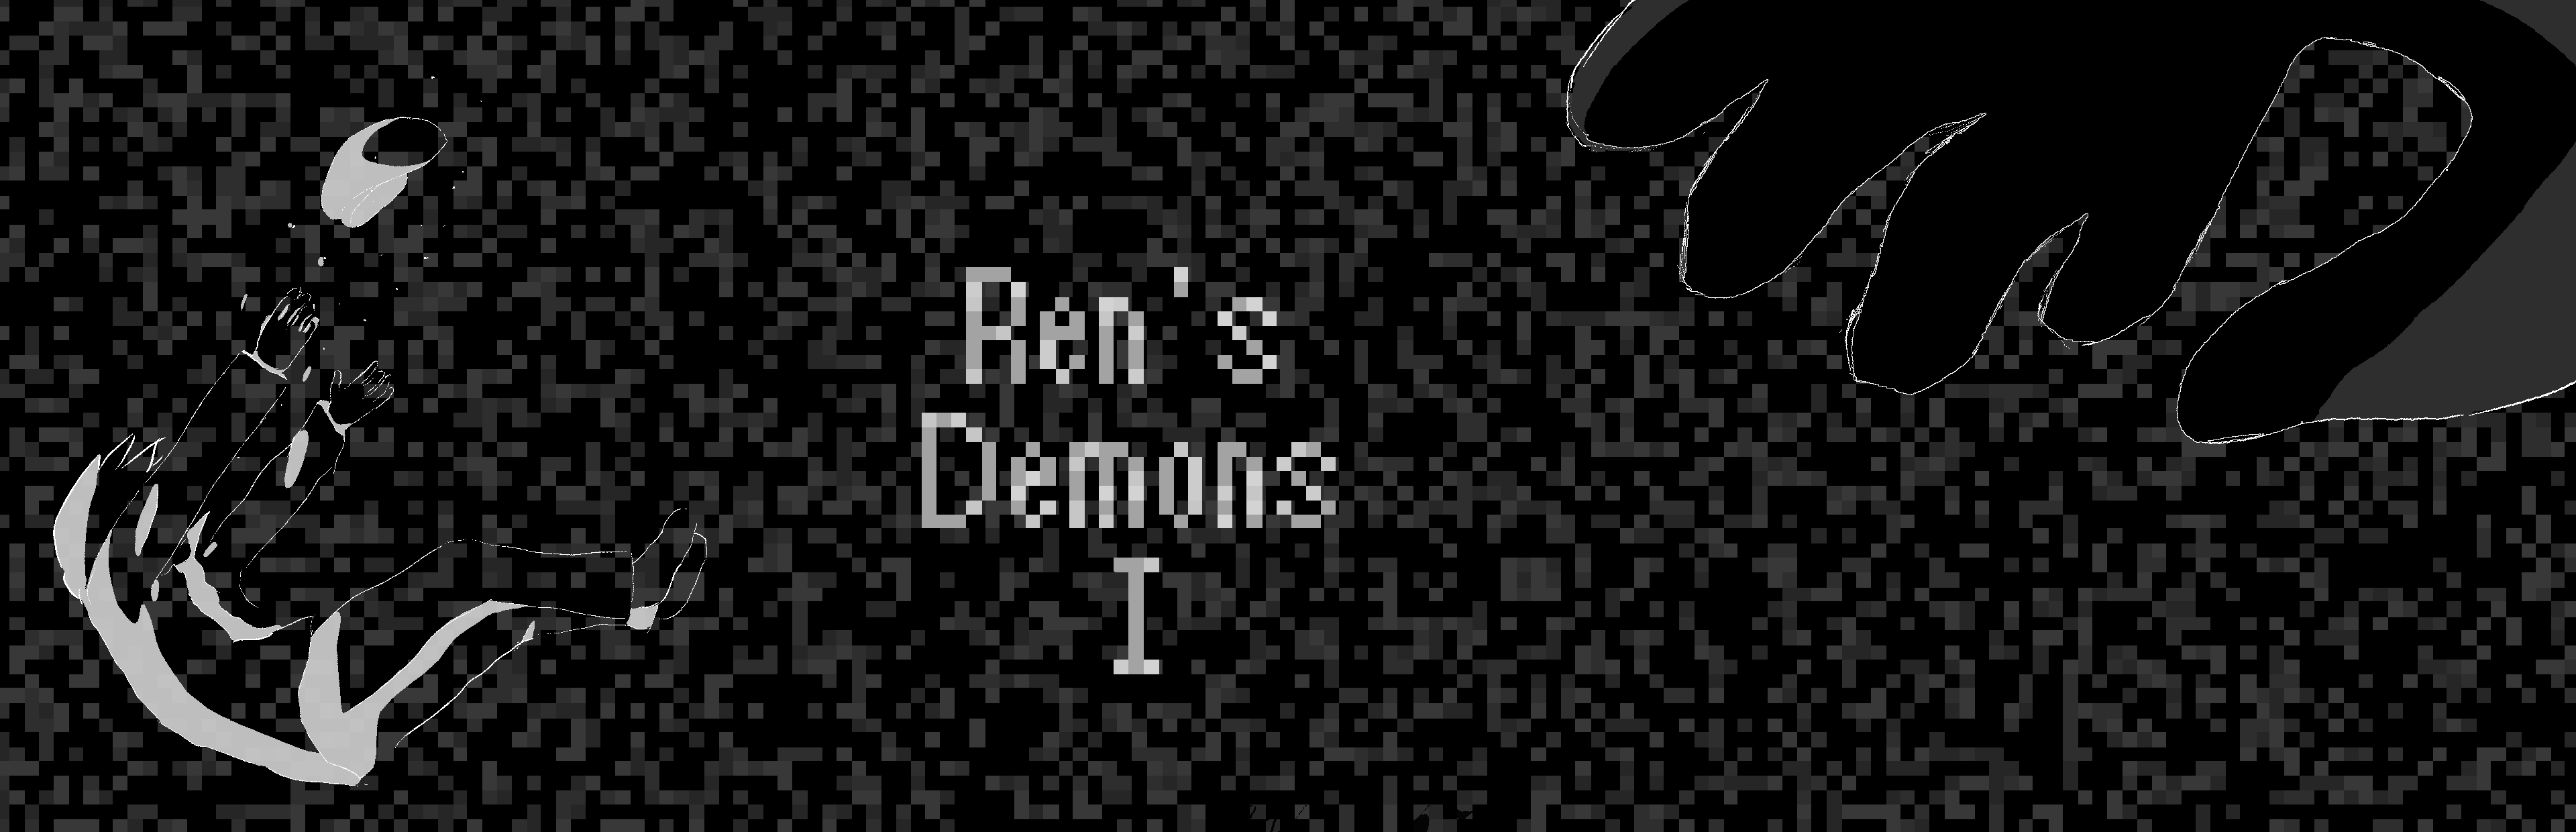 Ren's Demons I